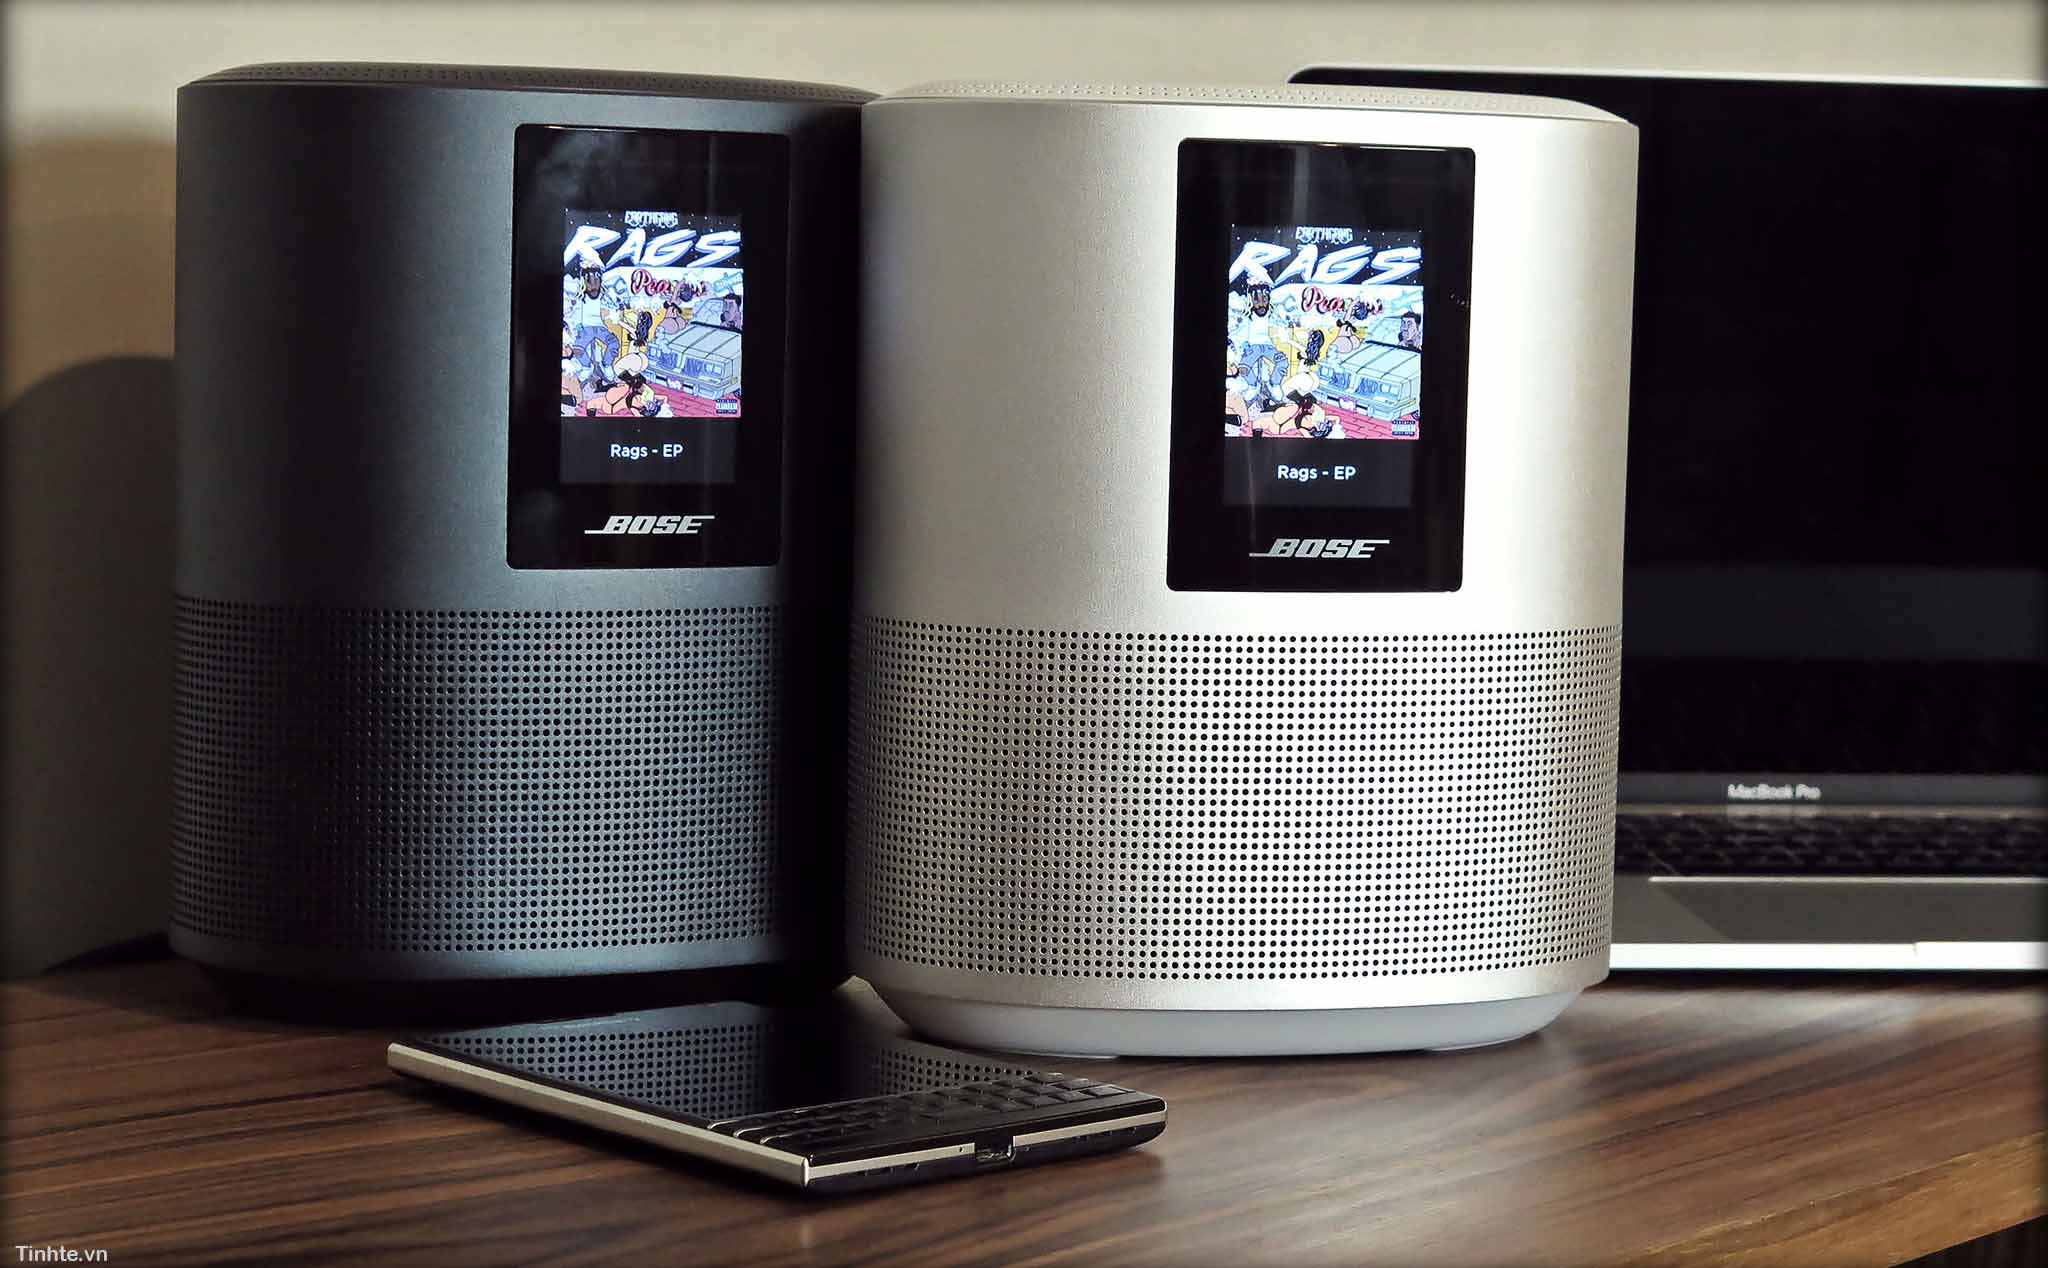 Đánh giá Bose Home Speaker 500 - smart speaker nhưng chưa được thông minh